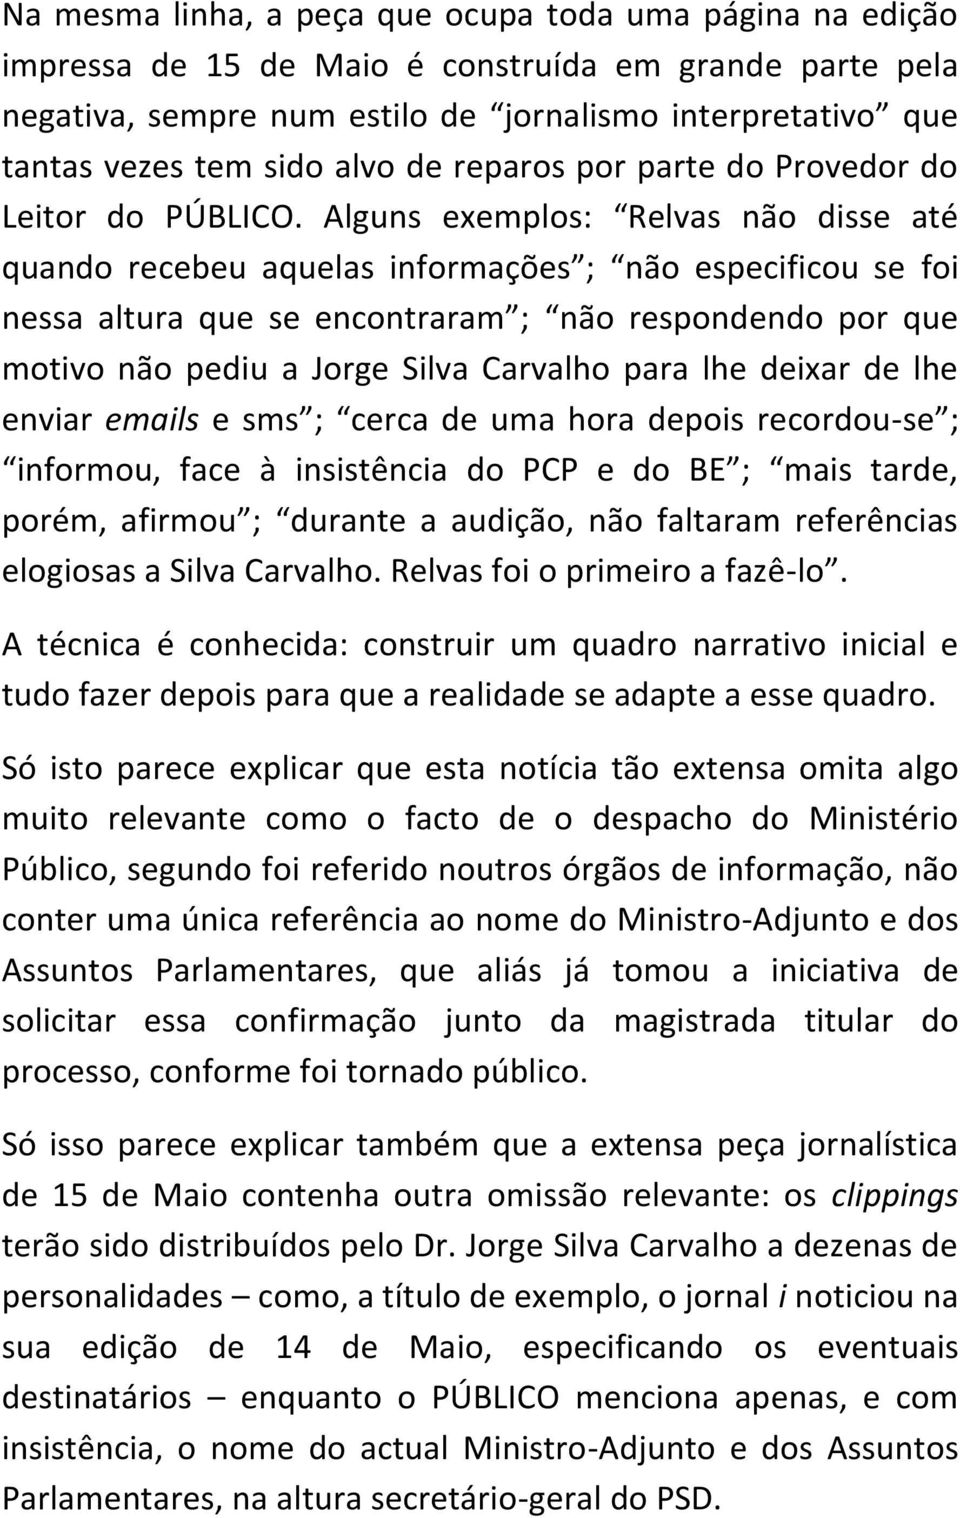 Alguns exemplos: Relvas não disse até quando recebeu aquelas informações ; não especificou se foi nessa altura que se encontraram ; não respondendo por que motivo não pediu a Jorge Silva Carvalho